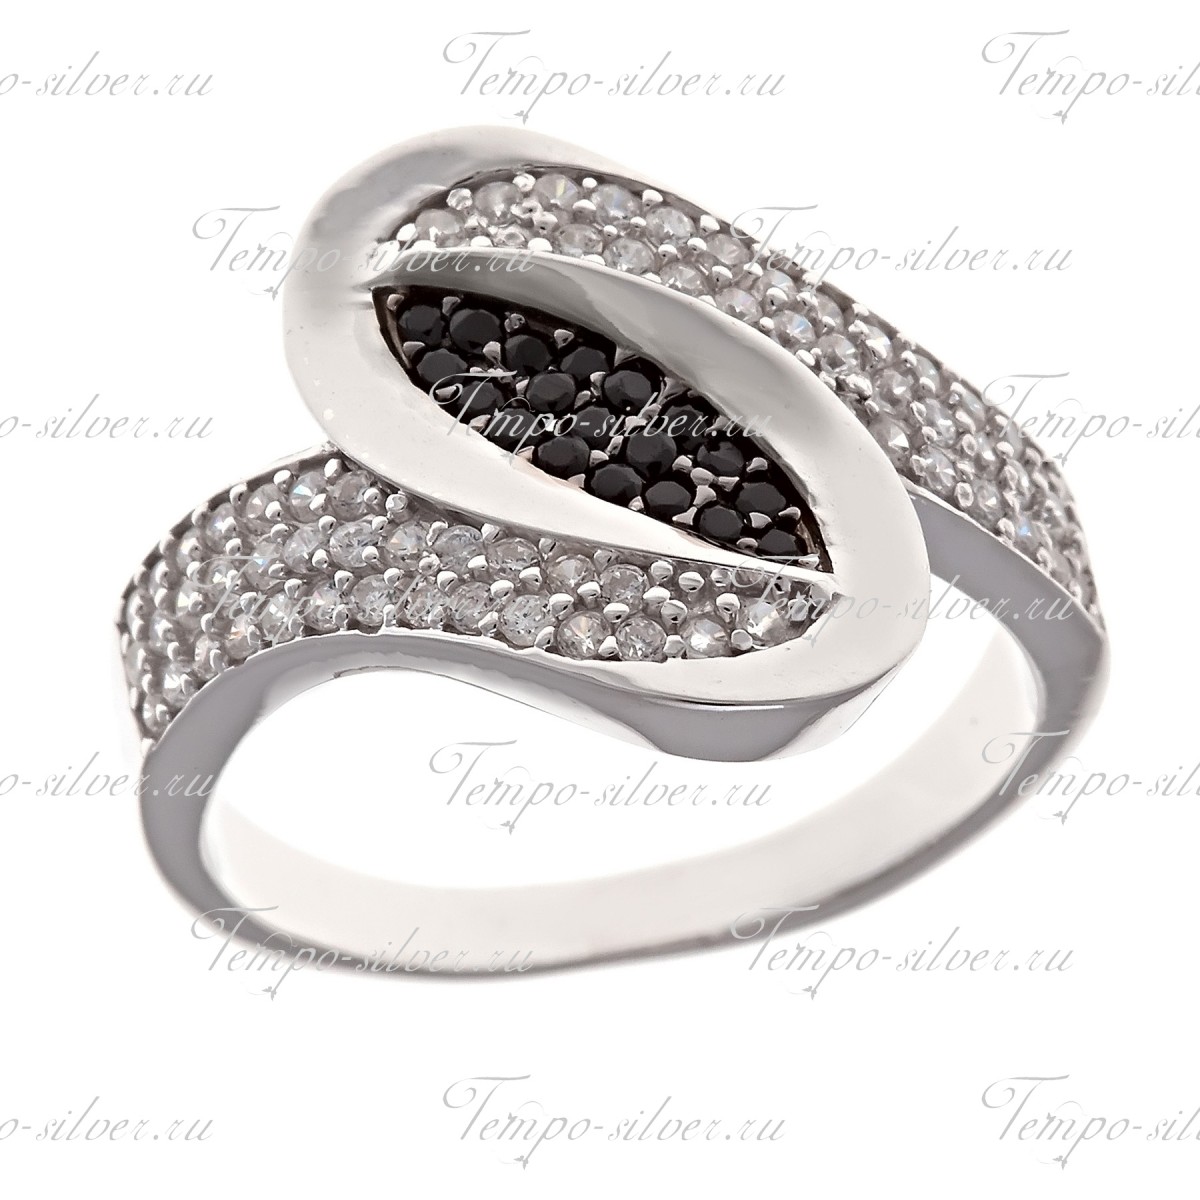 Кольцо из серебра зигзагообразной формы с черно-белыми камнями цена